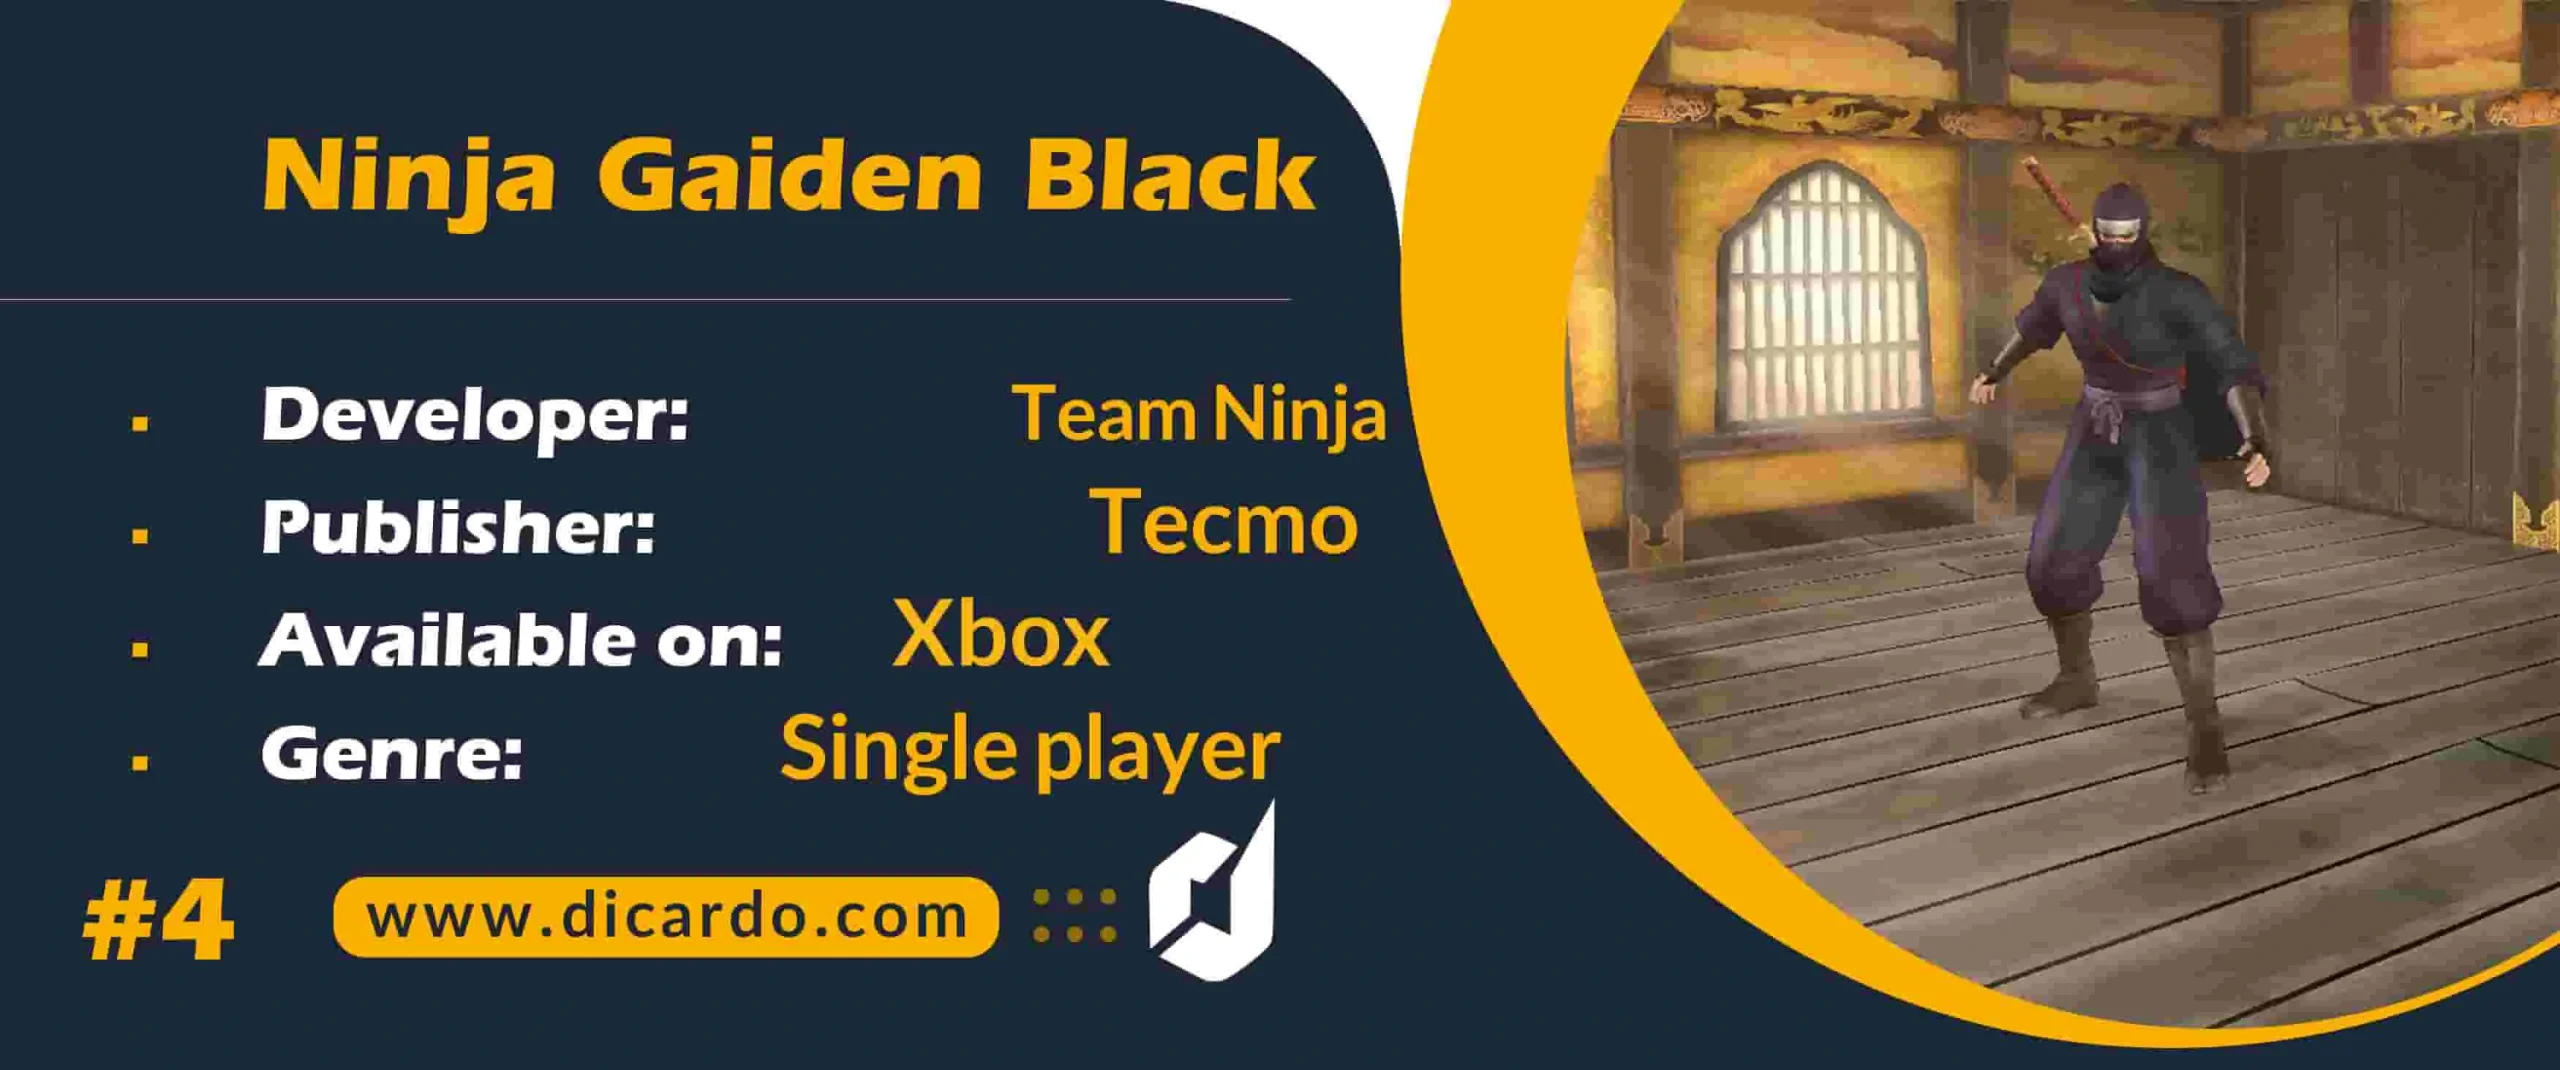 #4 نینجا گایدن بلک Ninja Gaiden Black یکی دیگر از بهترین بازیهای ایکس باکس اکشن ماجراجویی هک و اسلش